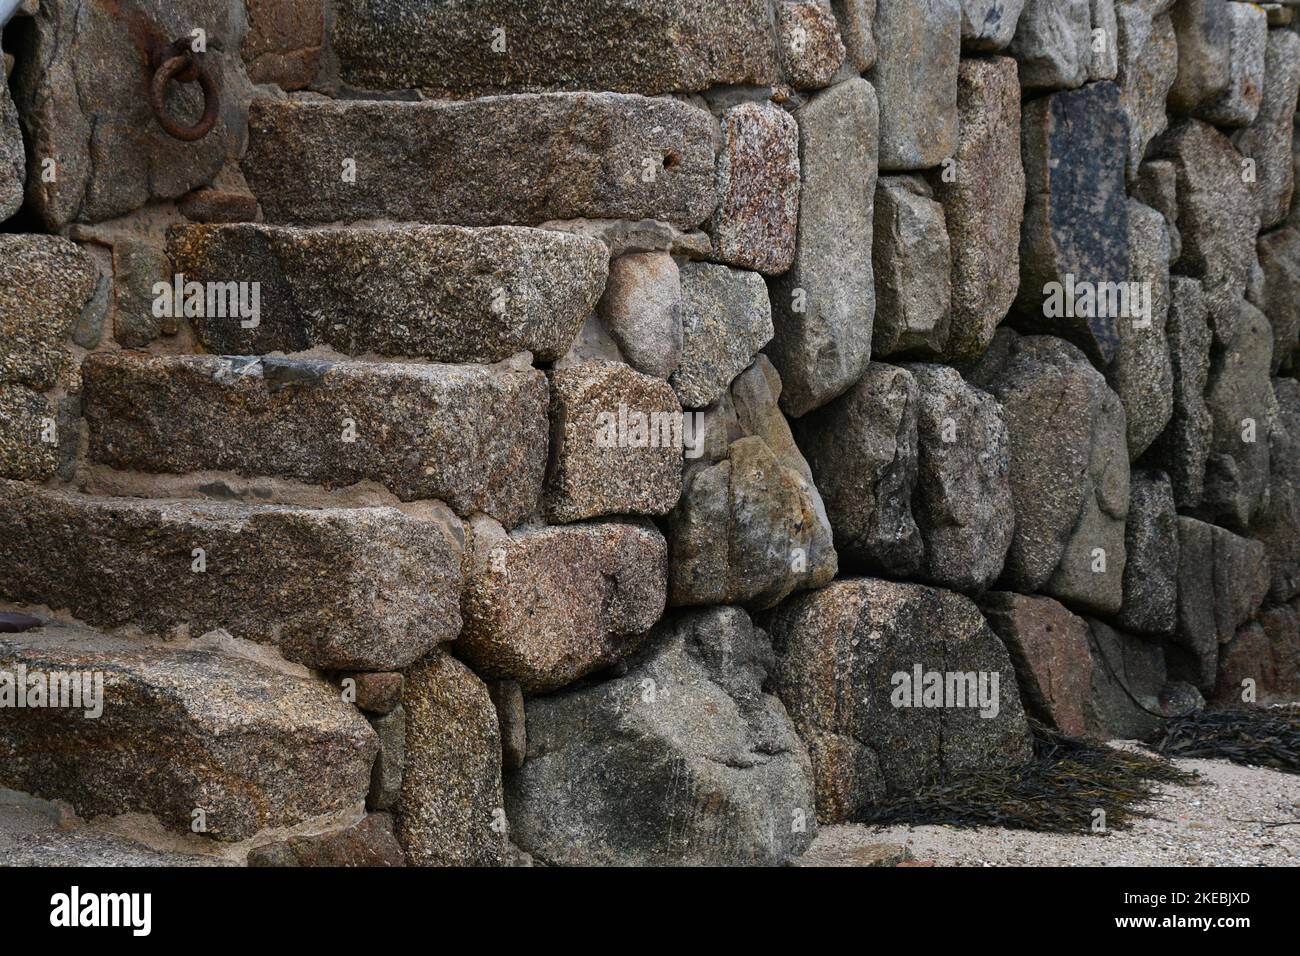 Granitblöcke bilden den Kai und die Stufen des Hafens in New Grimsby auf der Insel Tresco in den Isles of Scilly archepelago vor der Küste von Cornw Stockfoto